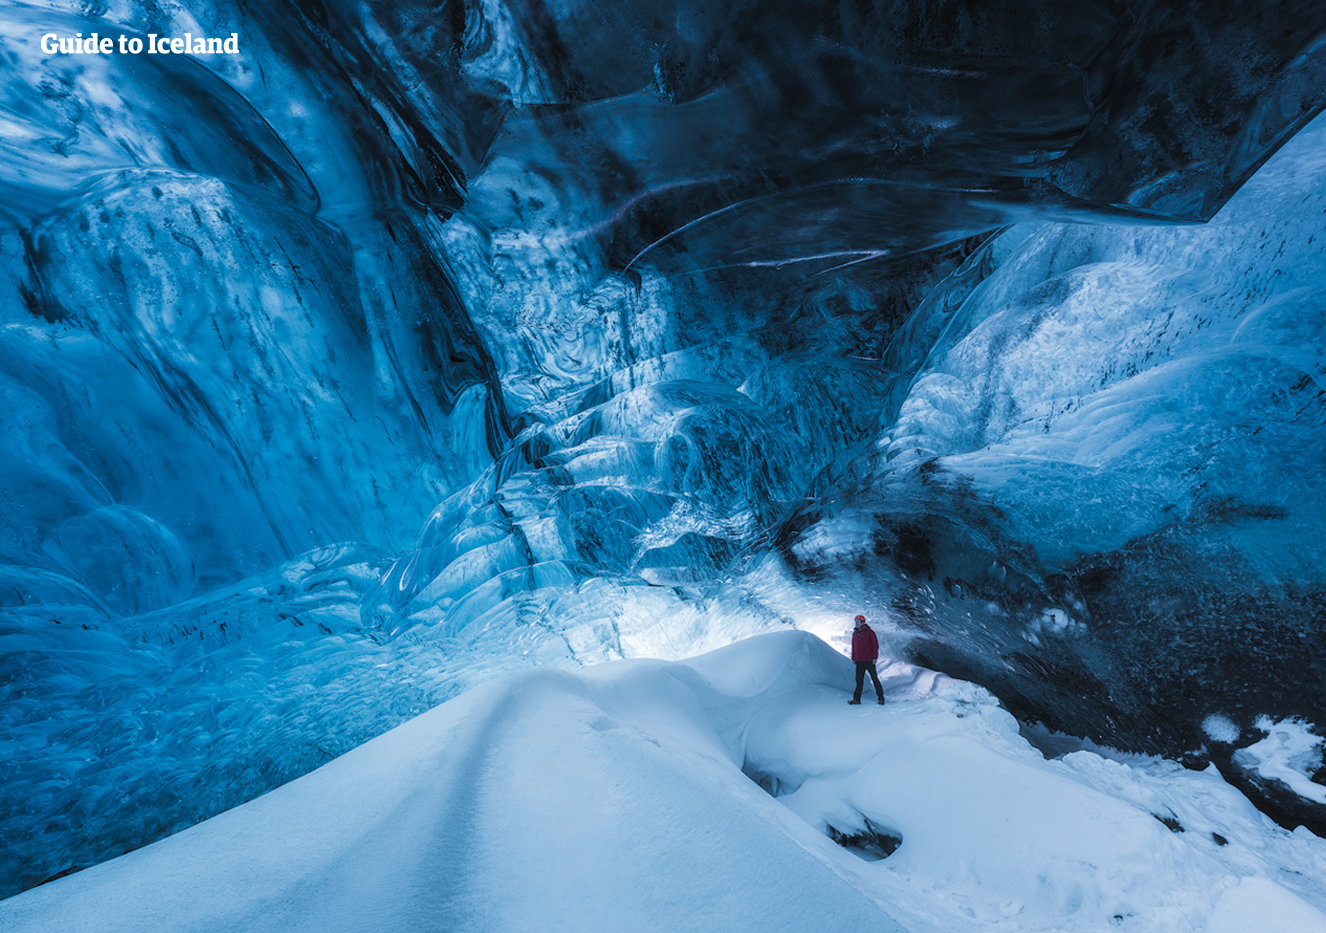 Las cuevas de hielo debajo del glaciar de Vatnajökull se ven tan hermosas que parecen sacadas de una novela de fantasía.